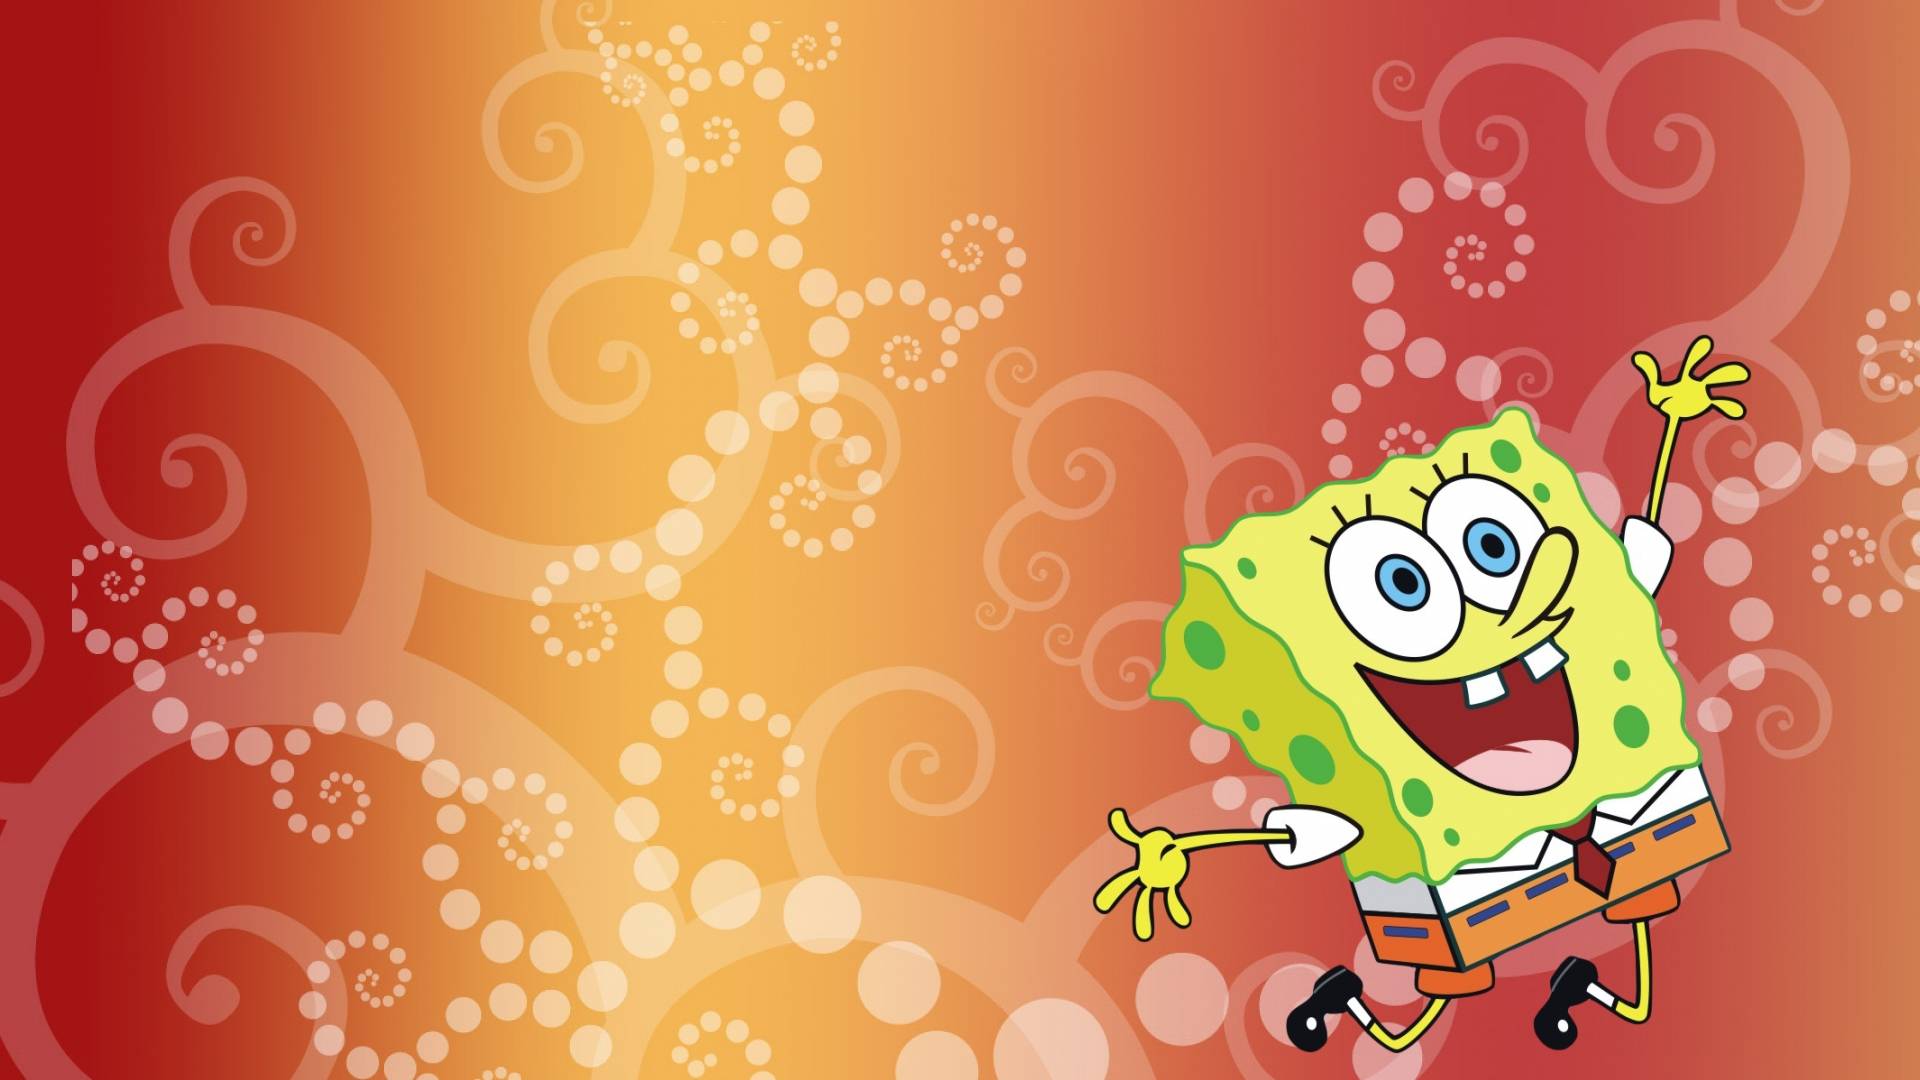 Cool Spongebob wallpaper - SpongeBoB Square Pants Wallpaper